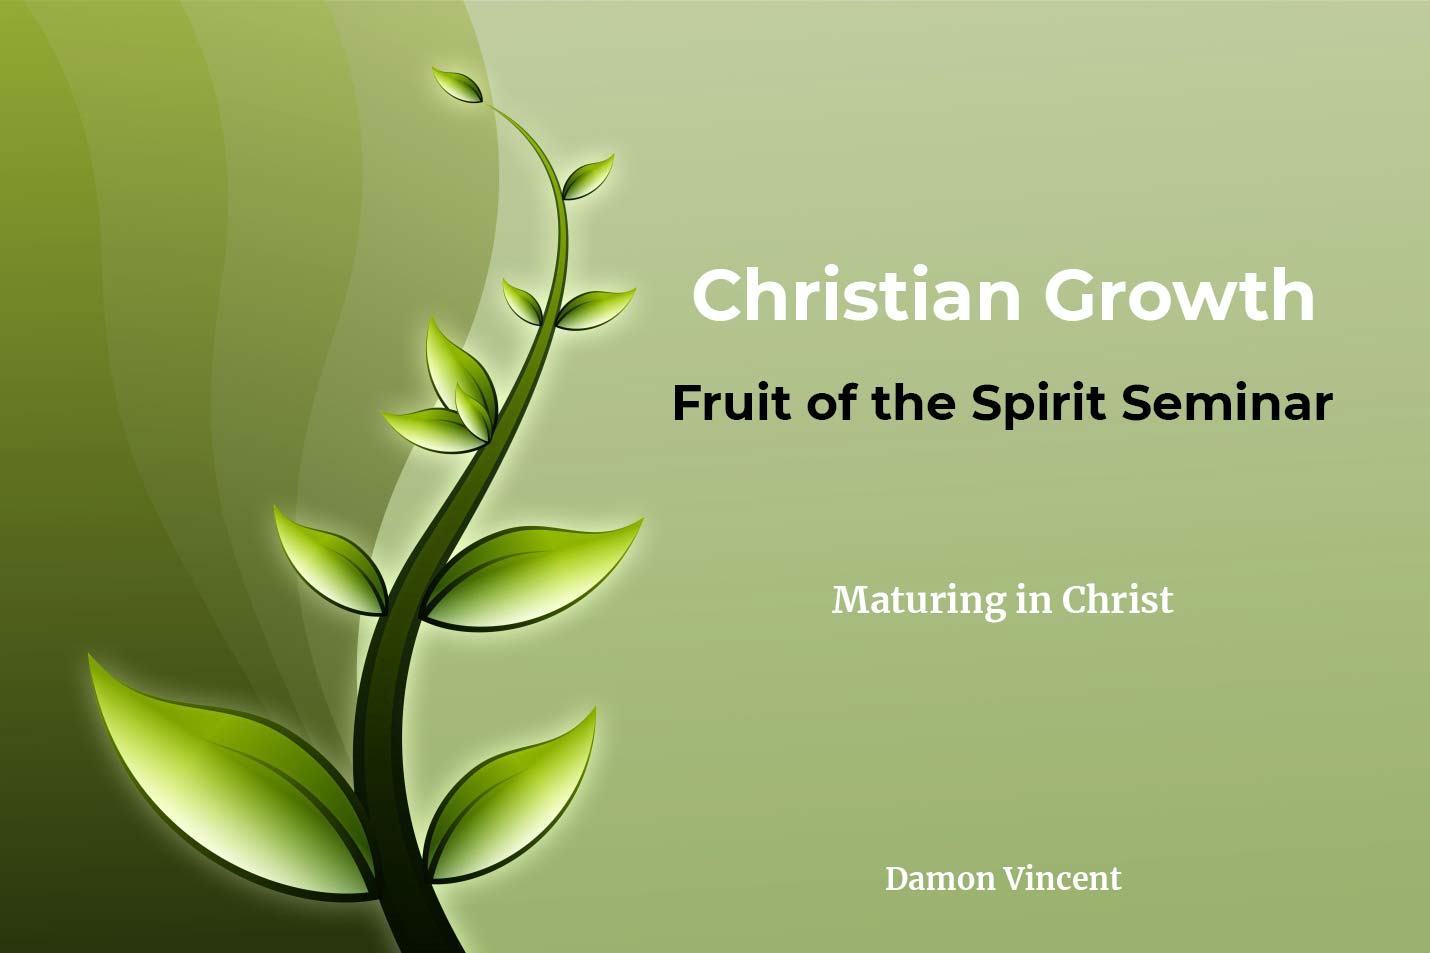 Fruit of the Spirit Seminar